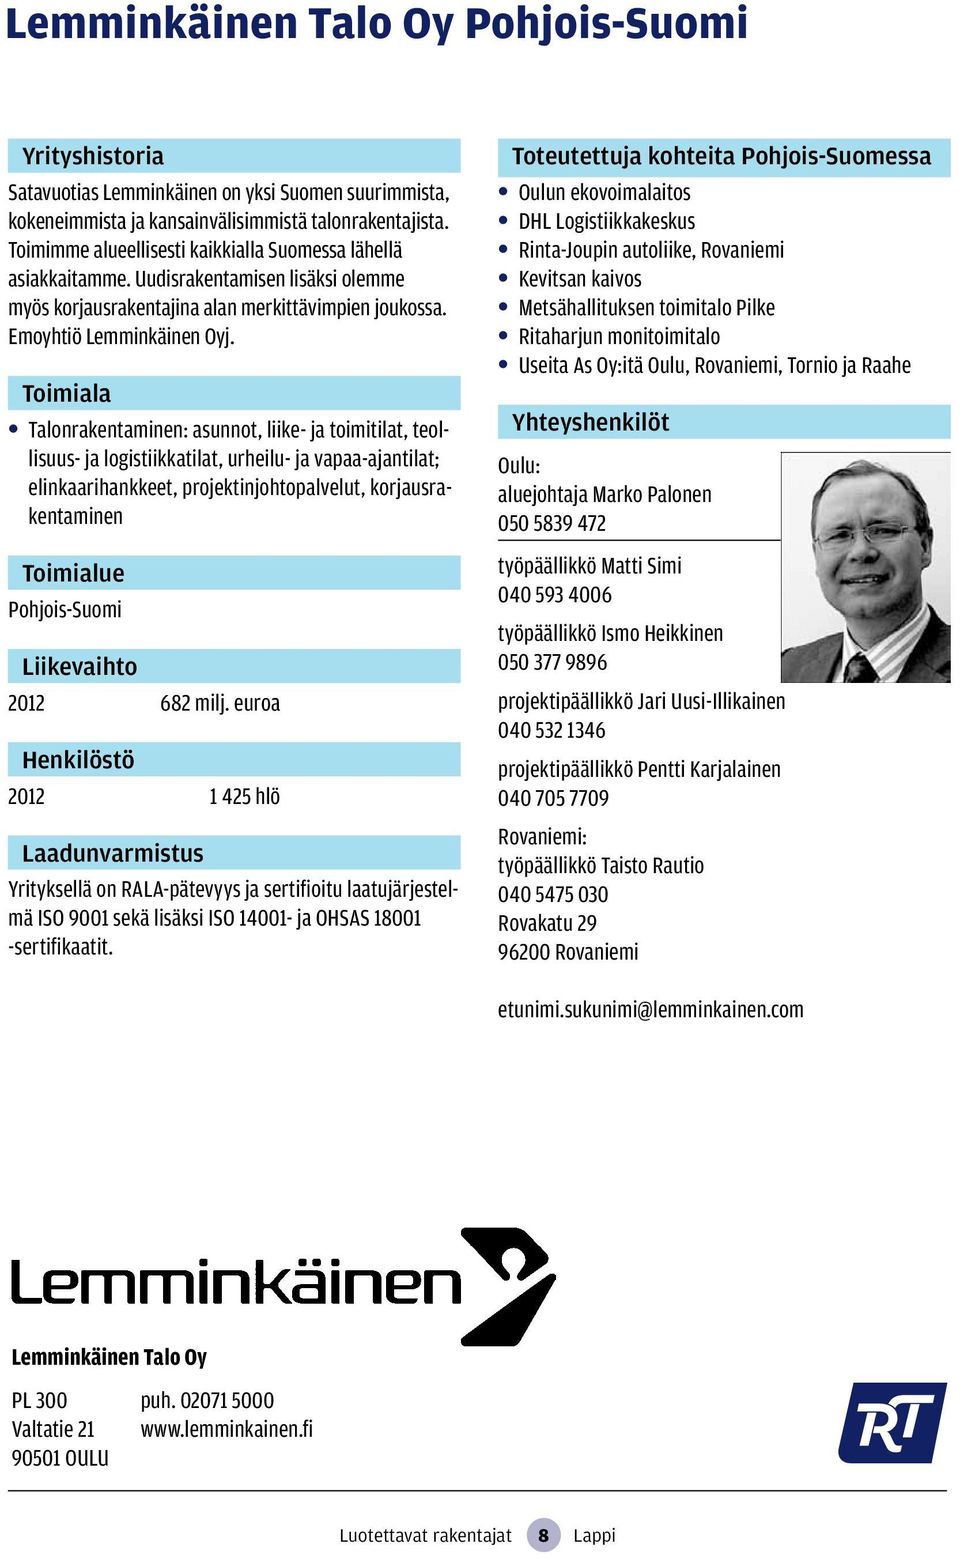 Talonrakentaminen: asunnot, liike- ja toimitilat, teollisuus- ja logistiikkatilat, urheilu- ja vapaa-ajantilat; elinkaarihankkeet, projektinjohtopalvelut, korjausrakentaminen Pohjois-Suomi